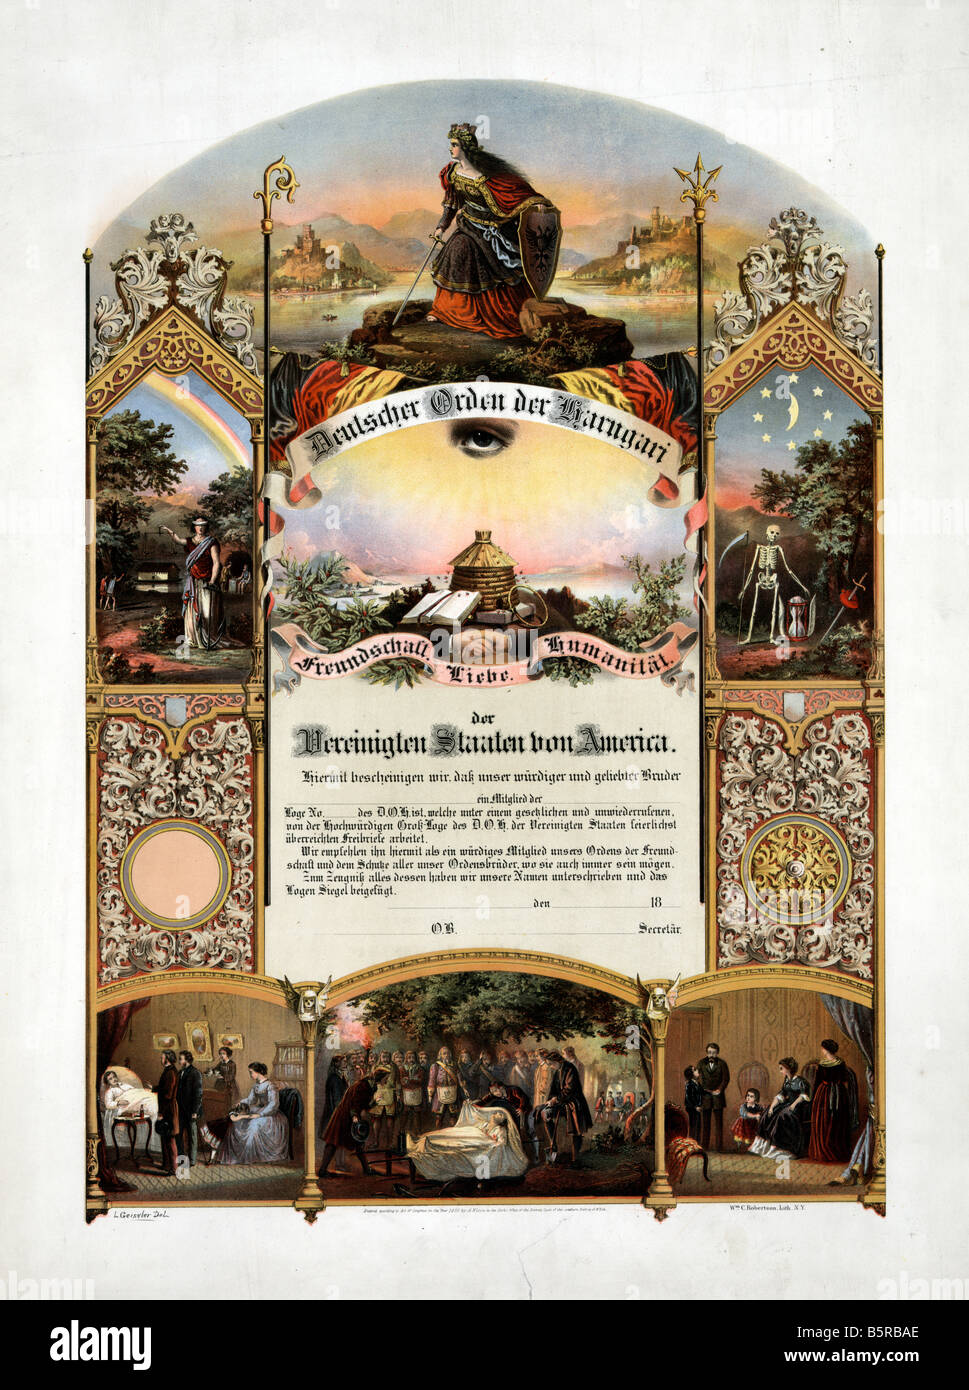 Deutscher orden estados unidos, 1890 Foto de stock